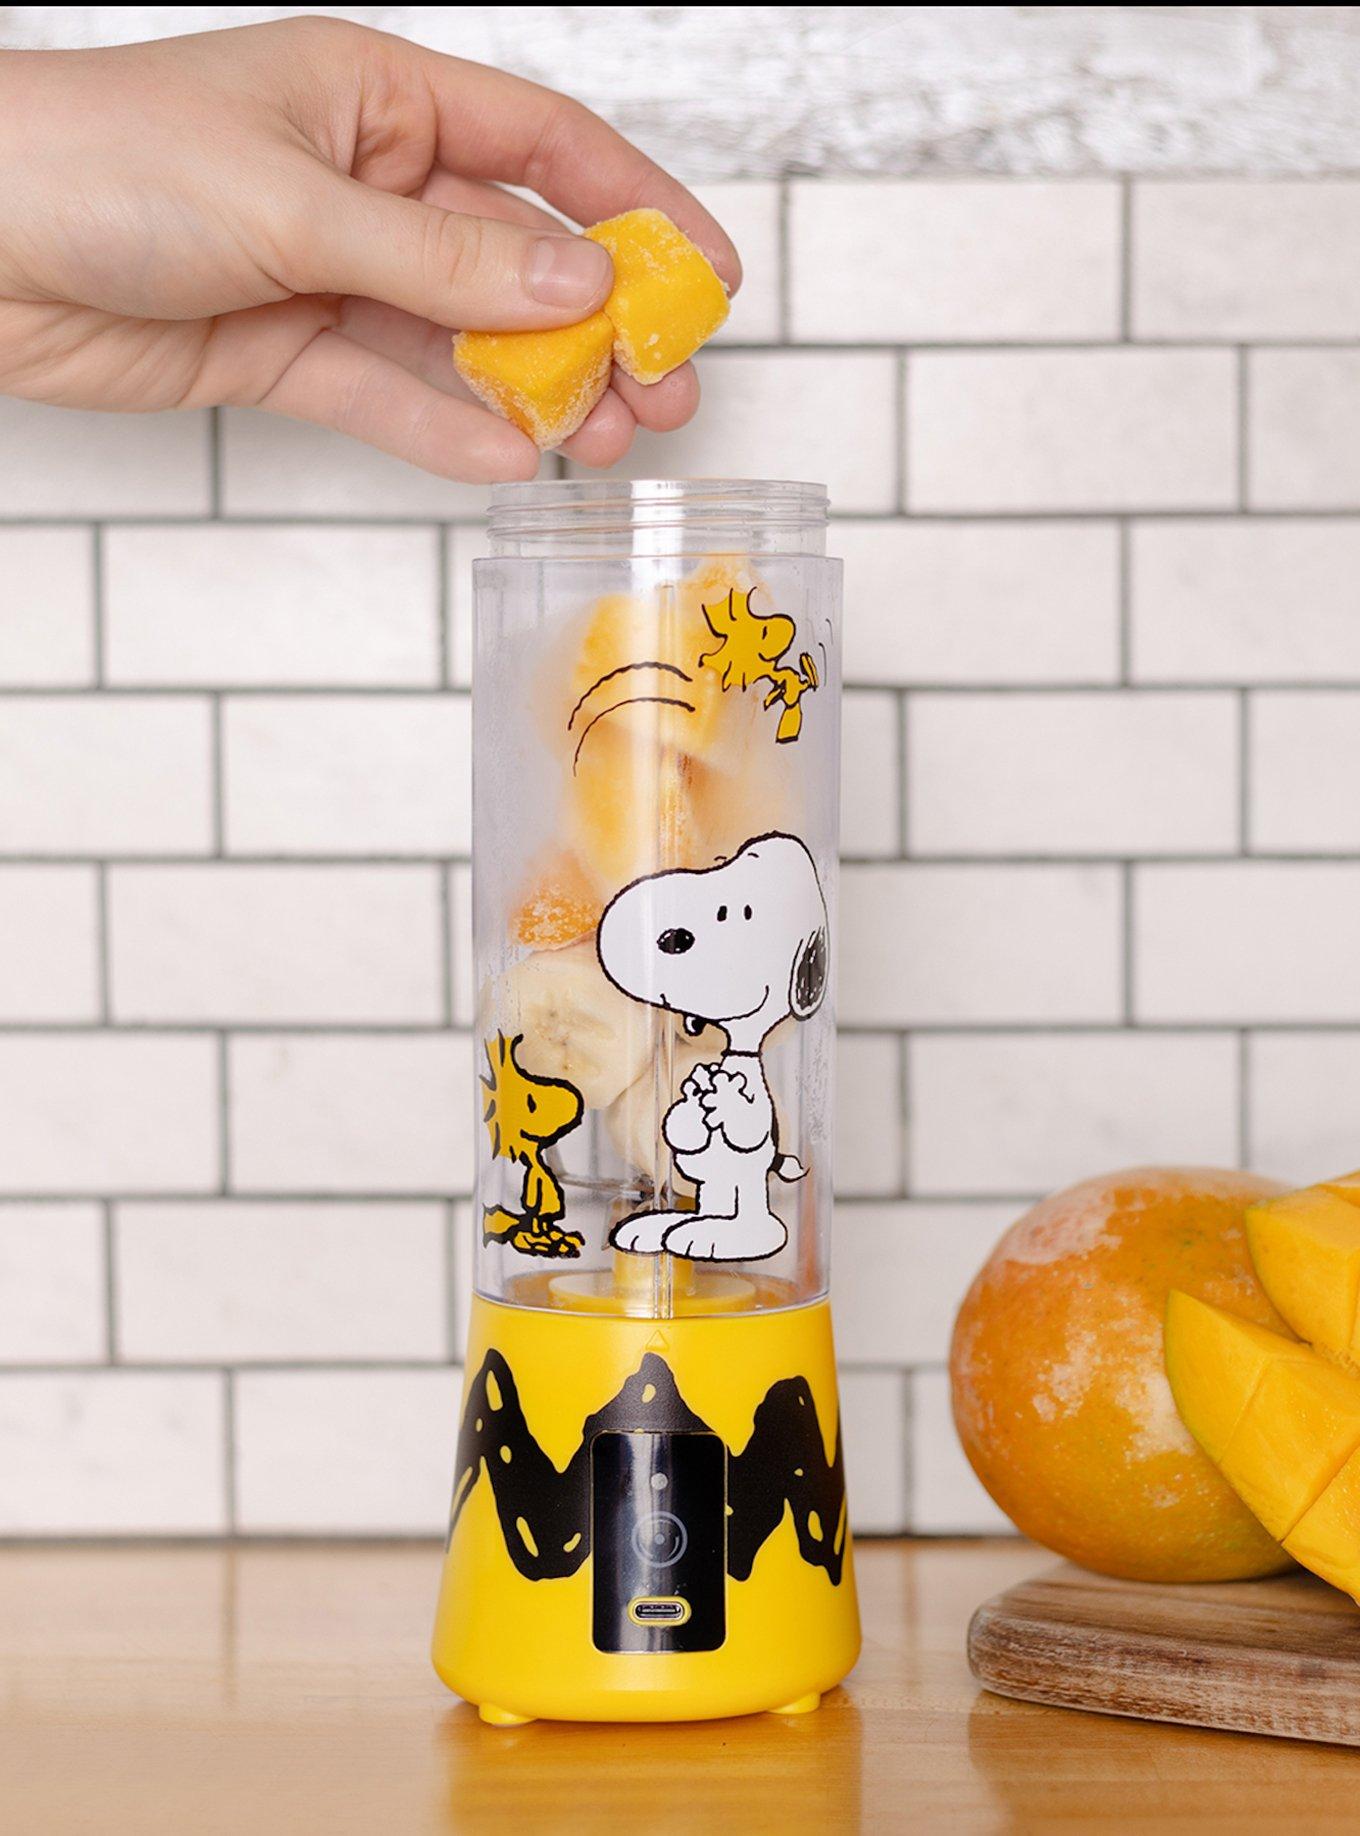 Peanuts Snoopy & Woodstock Portable Blender